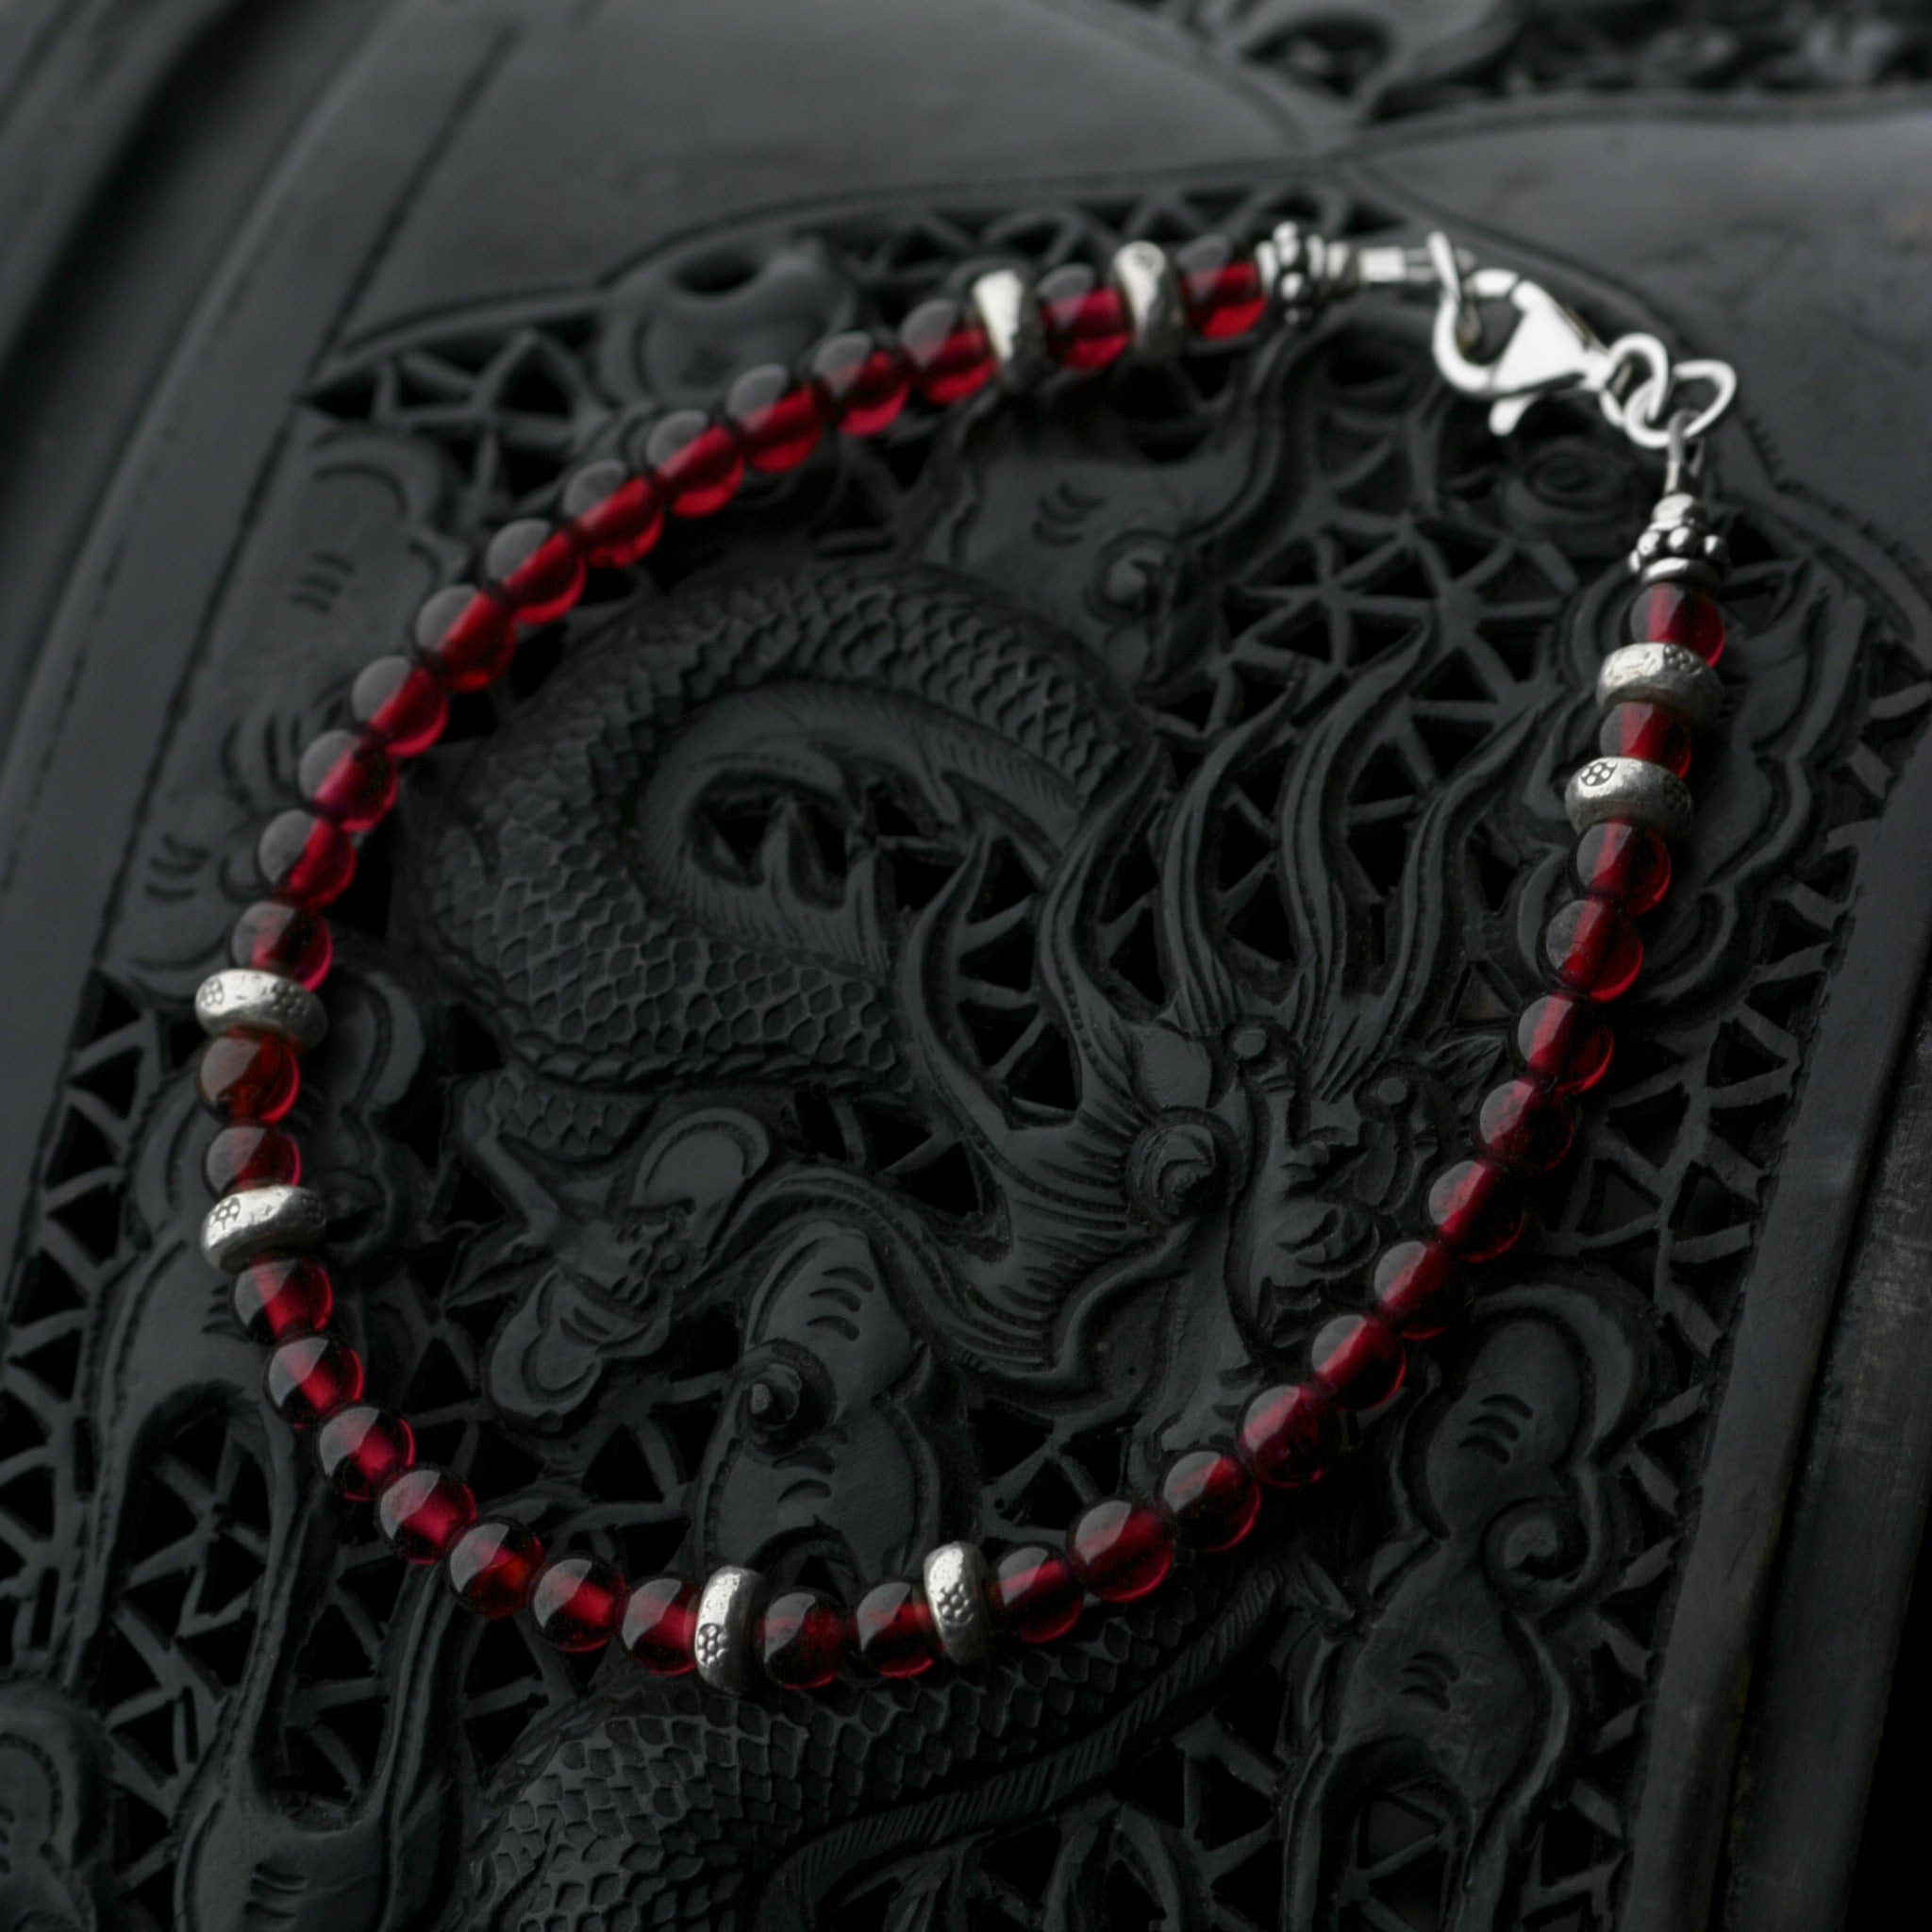 カレン族シルバーブレスレット/ガーネット#a06-36 - 天然のままで美しい赤。十字軍兵士に護身符とされた。